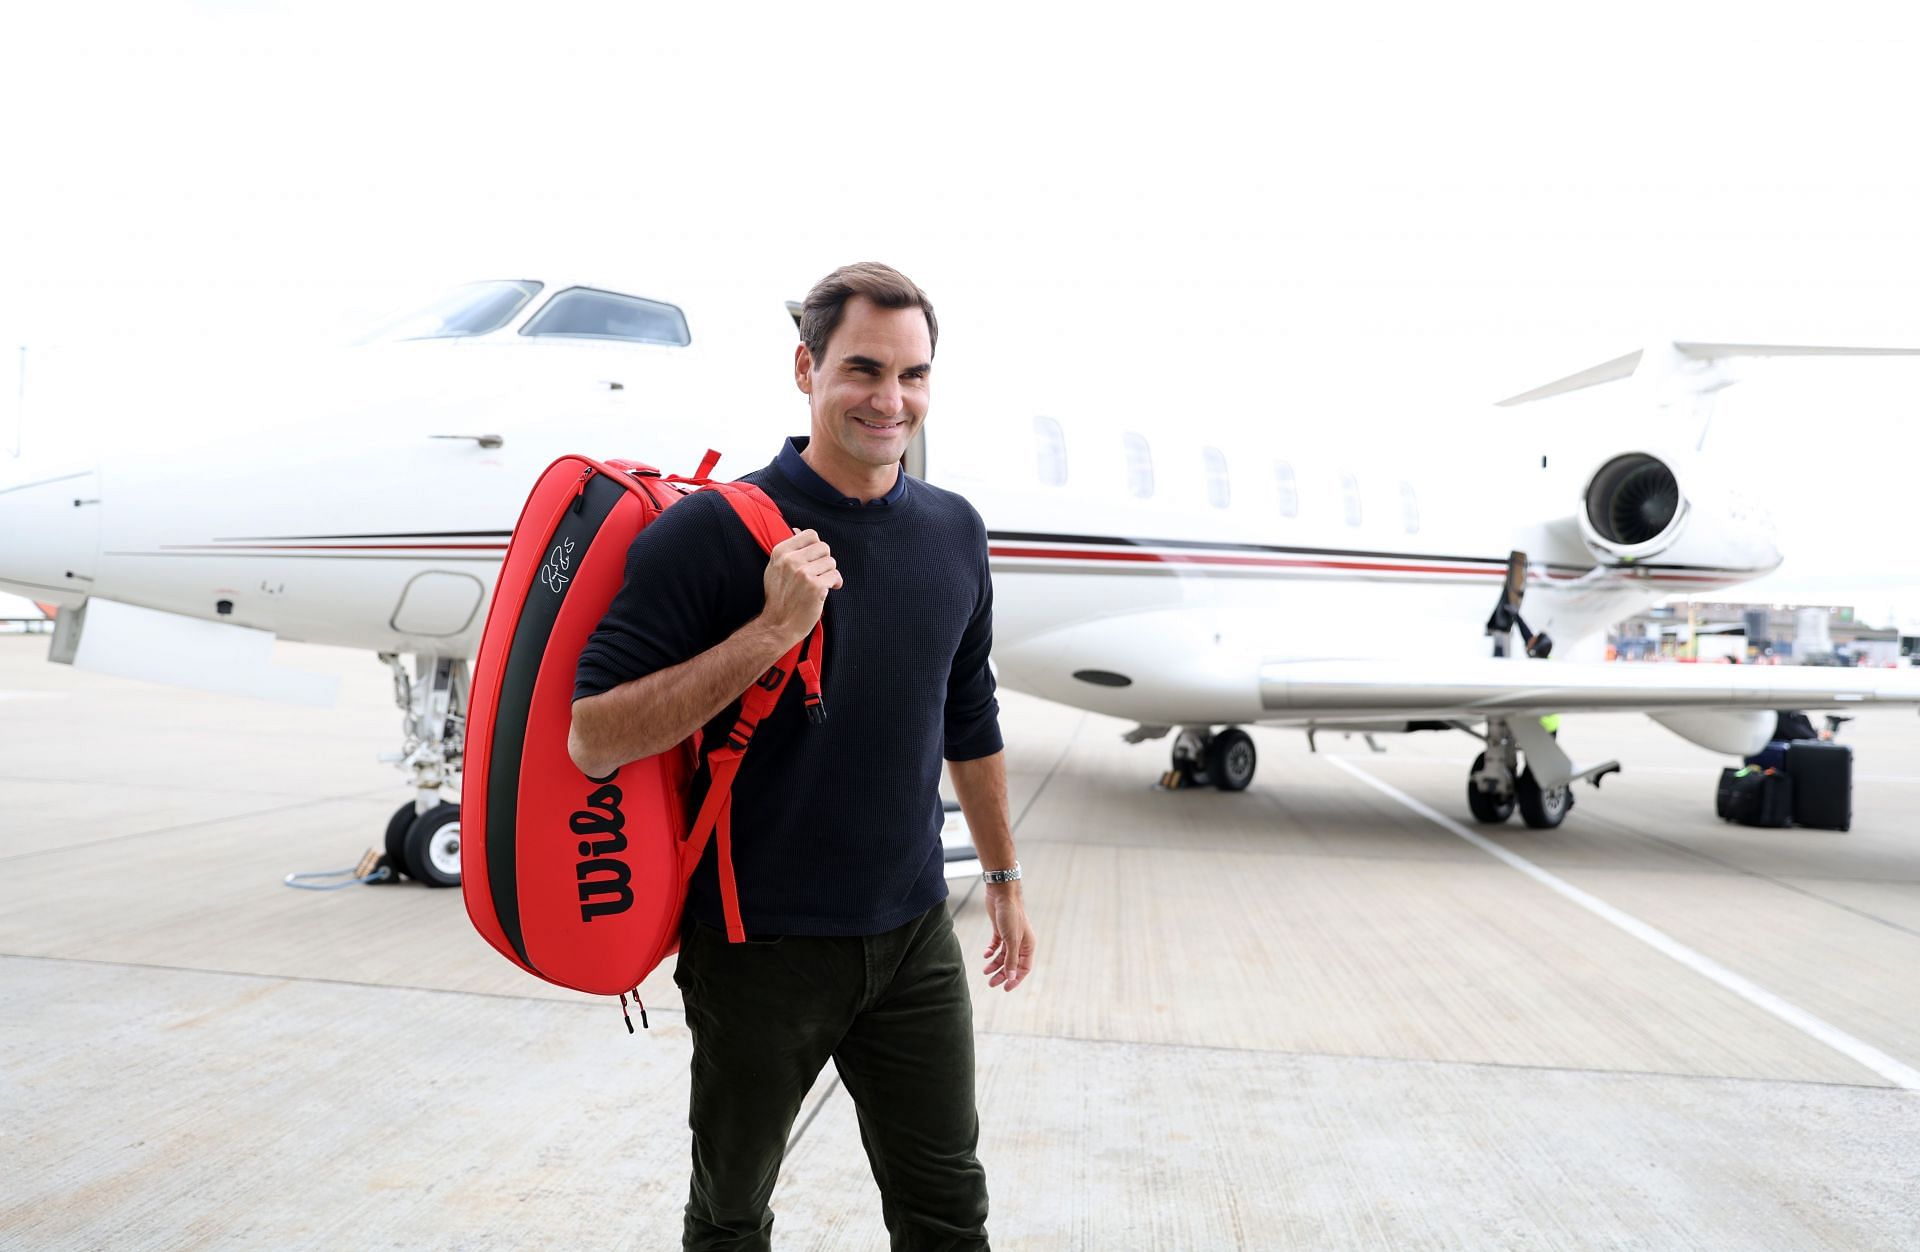 Roger Federer arrives for the Laver Cup 2022.